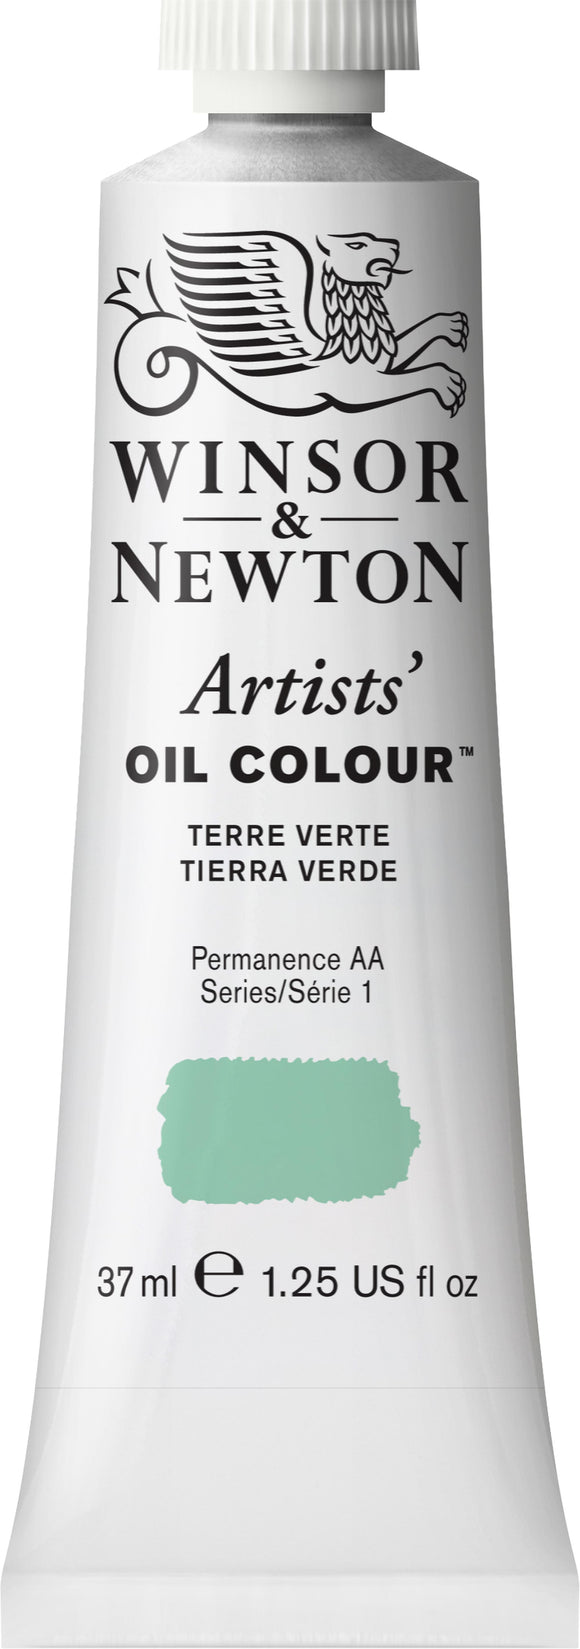 Winsor & Newton Artists Oil Color Terre Verte 37Ml